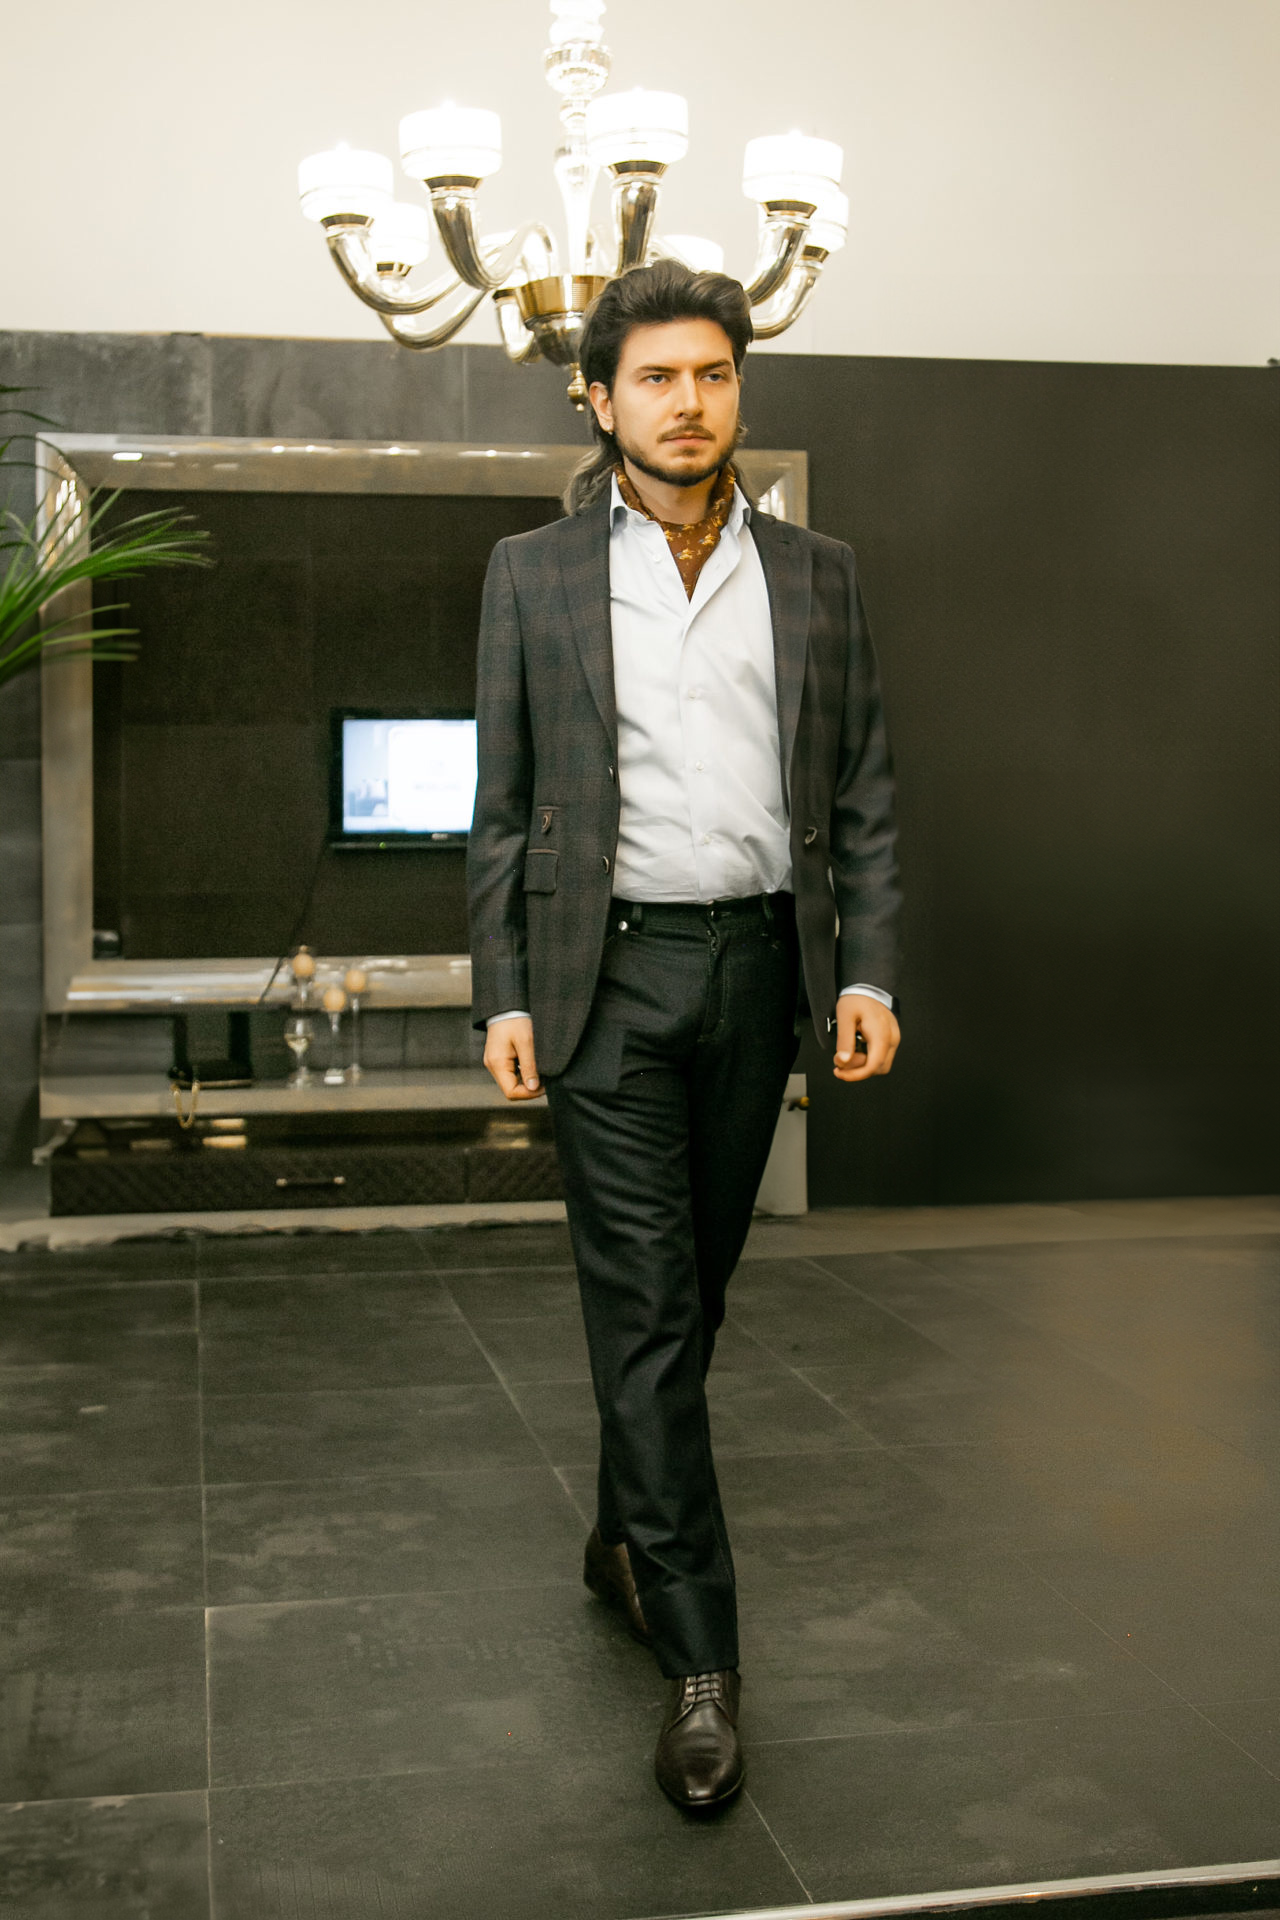 Фоторепортаж презентации салона мужской одежды Unico-s